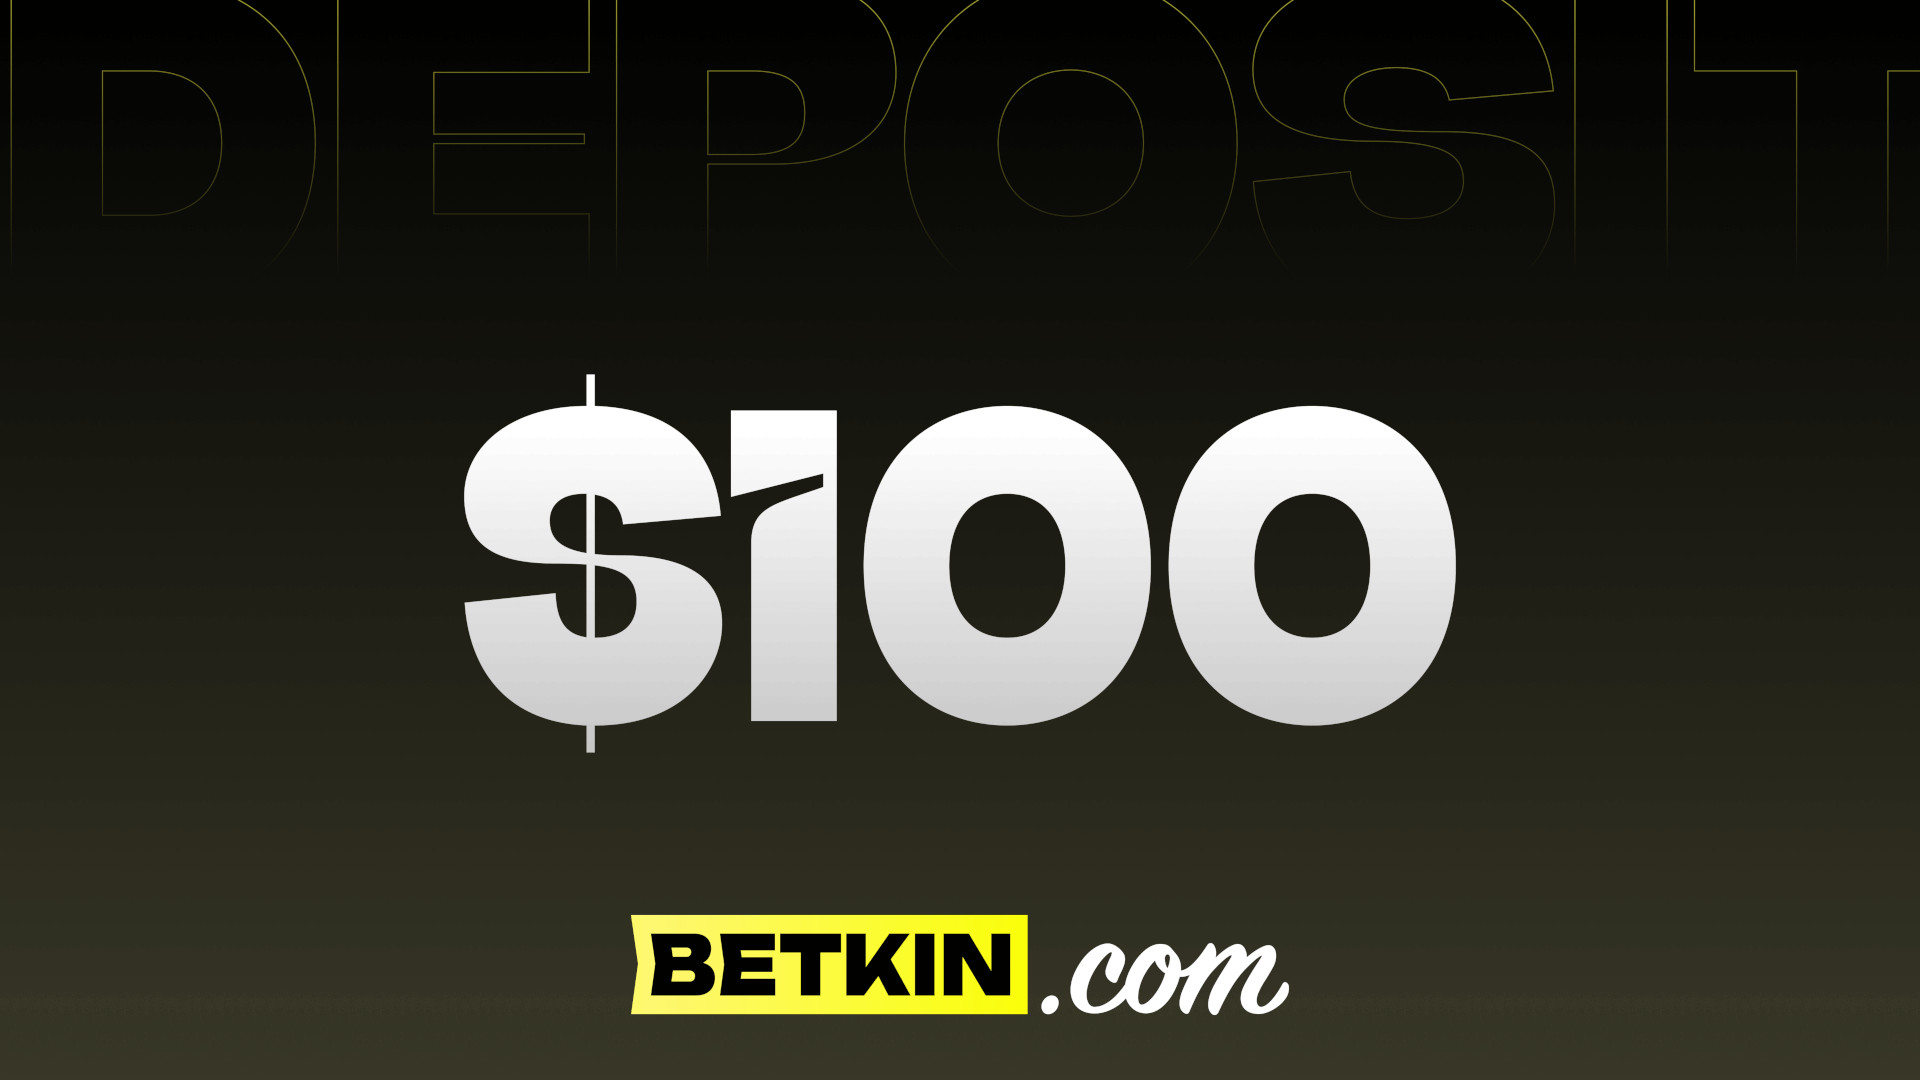 Betkin $100 Coupon [USD 111.35]